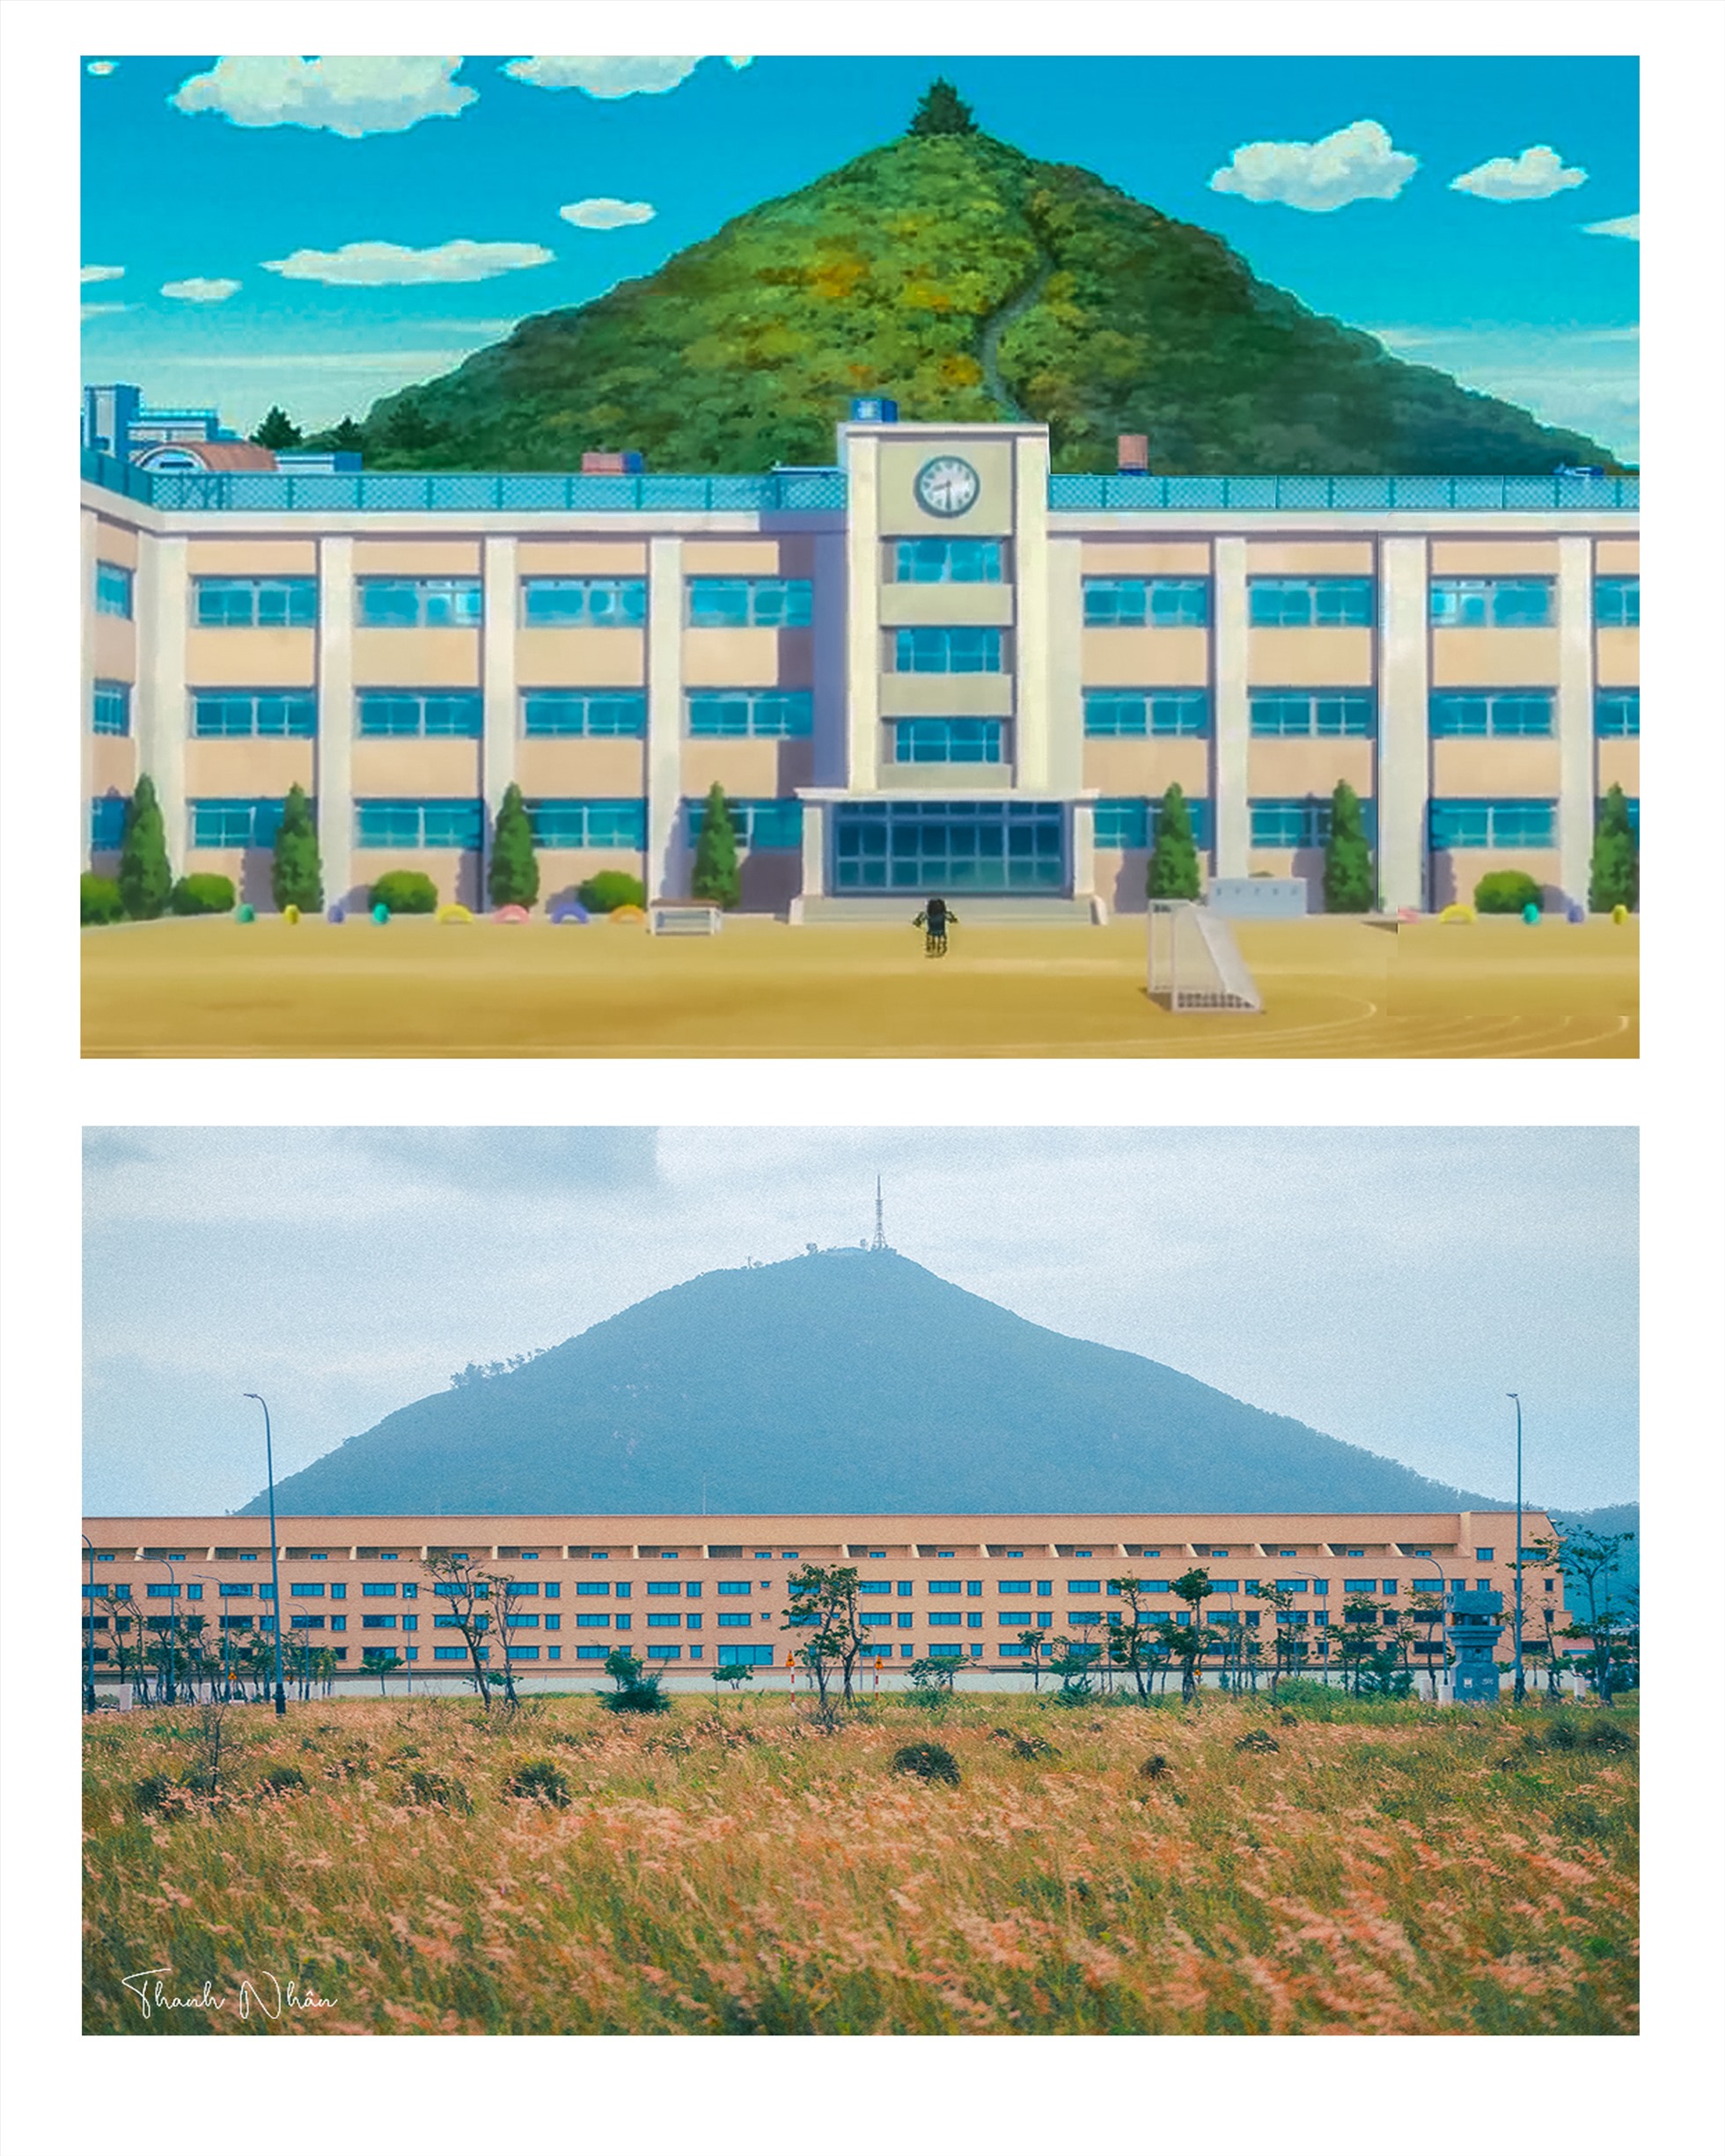 Núi Chóp Chài trong ảnh của Thanh Nhân khiến người xem liên tưởng đến ngọn núi sau trường của Nobita.